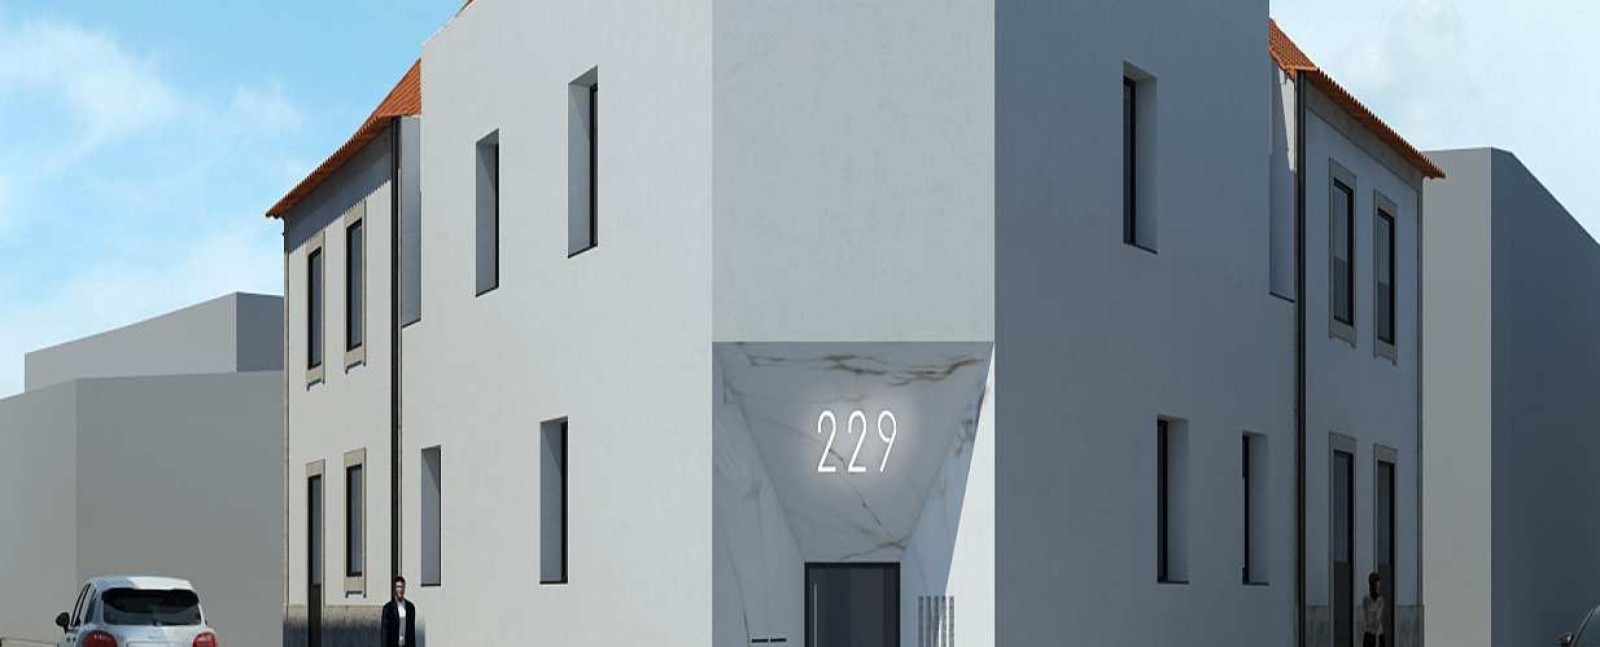 Verkauf: Gebäude, zu renovieren, im Zentrum von Vila Nova de Gaia, Porto, Portugal_214610